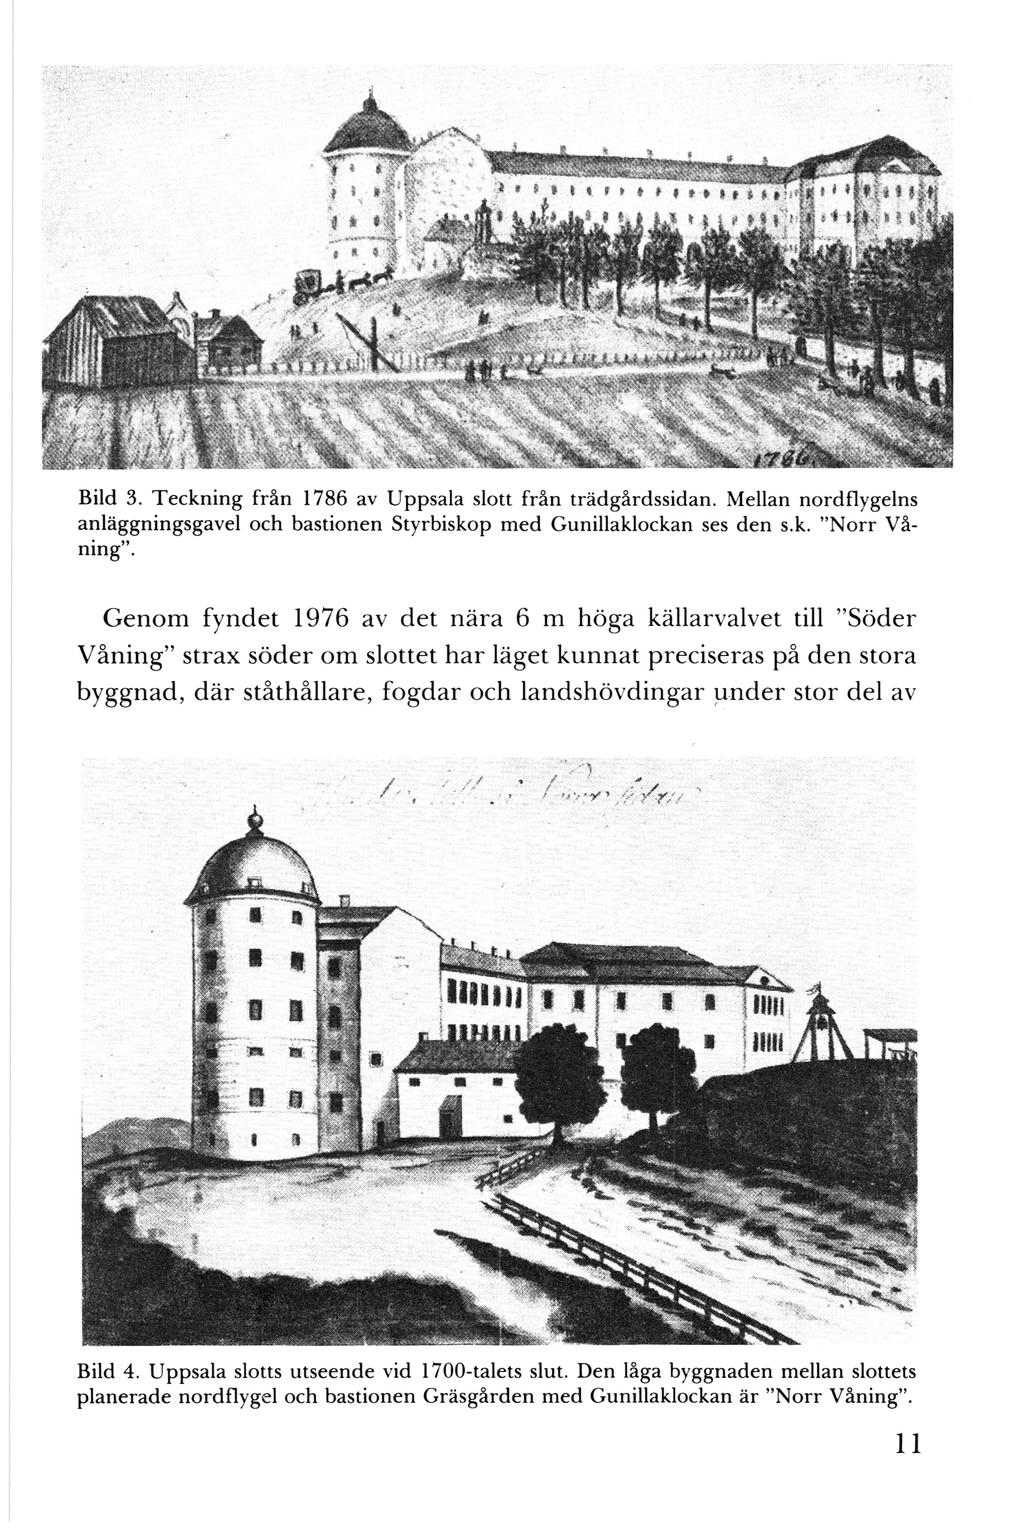 Bild 3. Teckning från 1786 av Uppsala slott från trädgårdssidan. Mellan nordflygelns anläggningsgavel och bastionen Styrbiskop med Gunillaklockan ses den s.k. "Norr Våning".